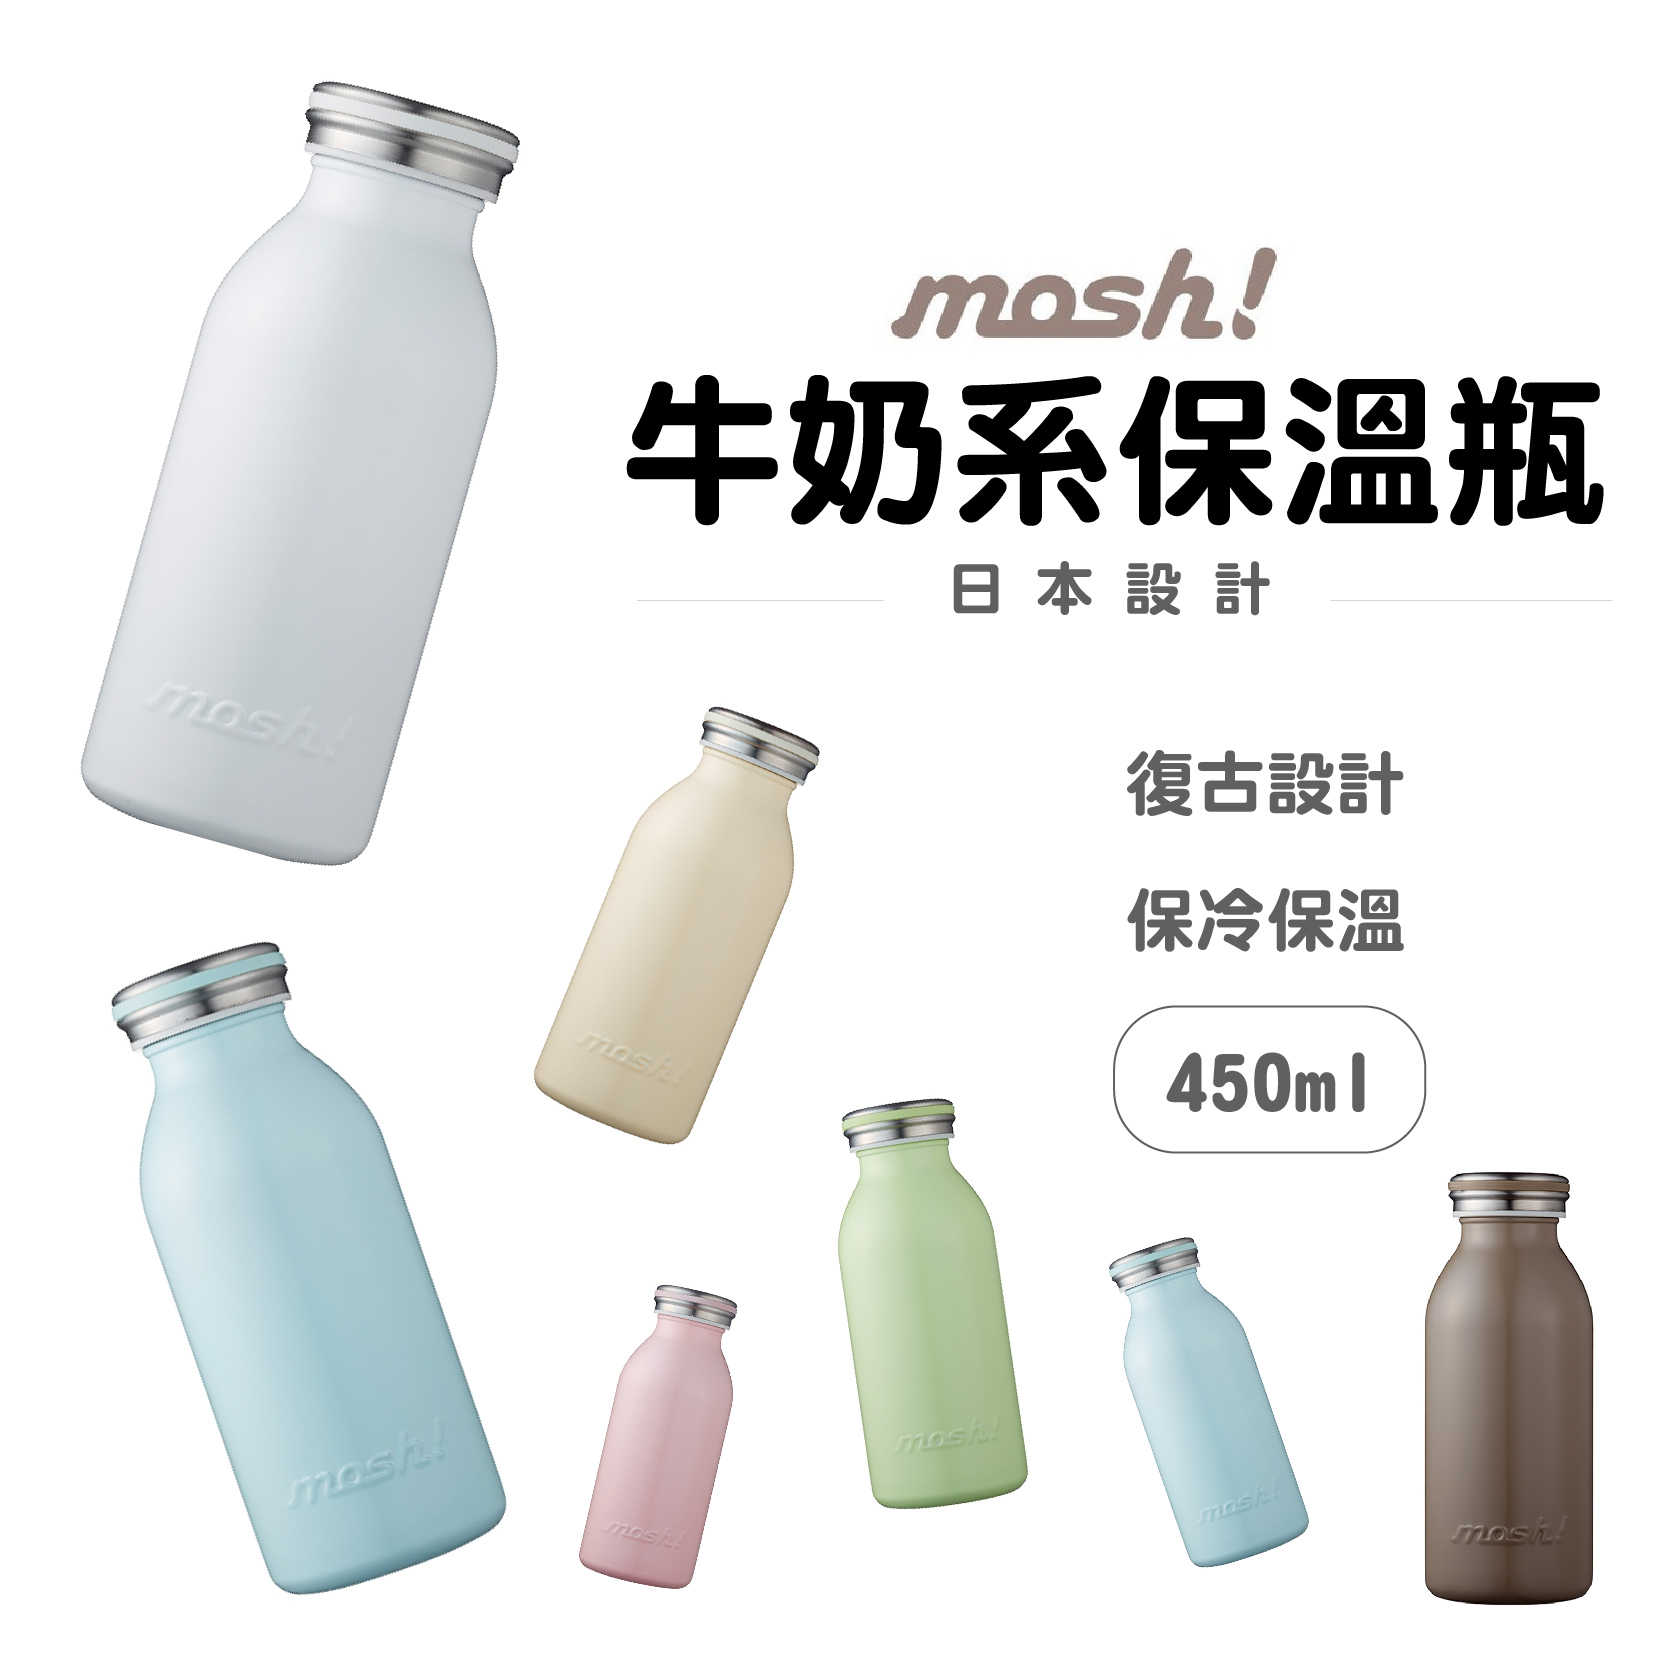 現貨『日本 MOSH! 牛奶系保溫瓶 450ml』水瓶 保溫壺 隨行杯 保溫杯 保溫瓶 保冷杯 星巴克